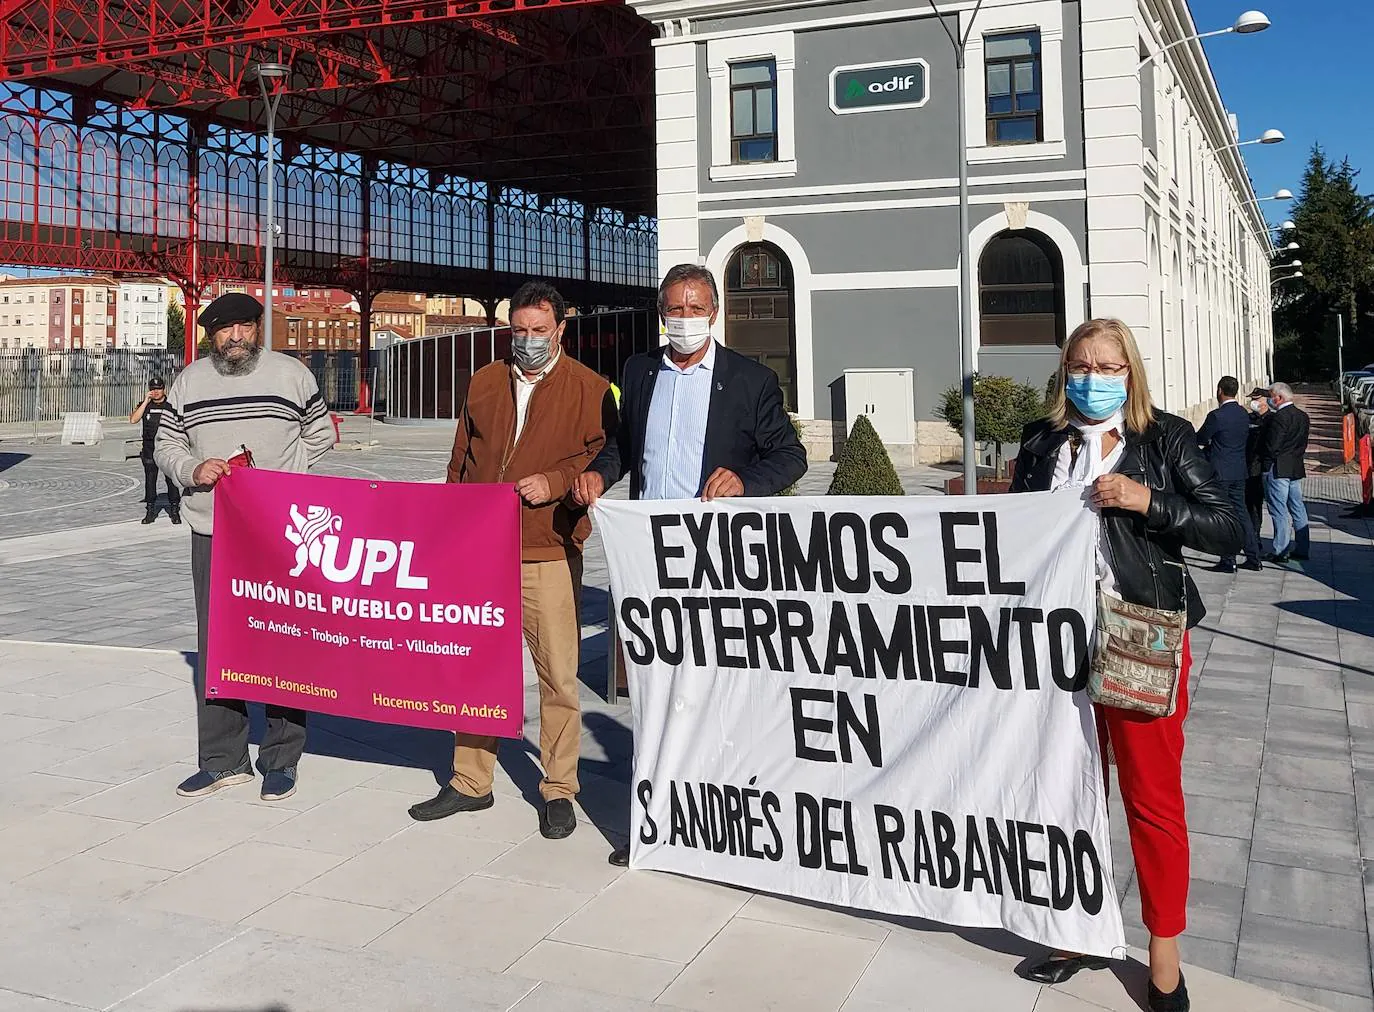 UPL ha presentado, a través del senador Carles Mulet, una enmienda para lograr cinco millones de euros que permitan el soterramiento del tren el San Andrés del Rabanedo.